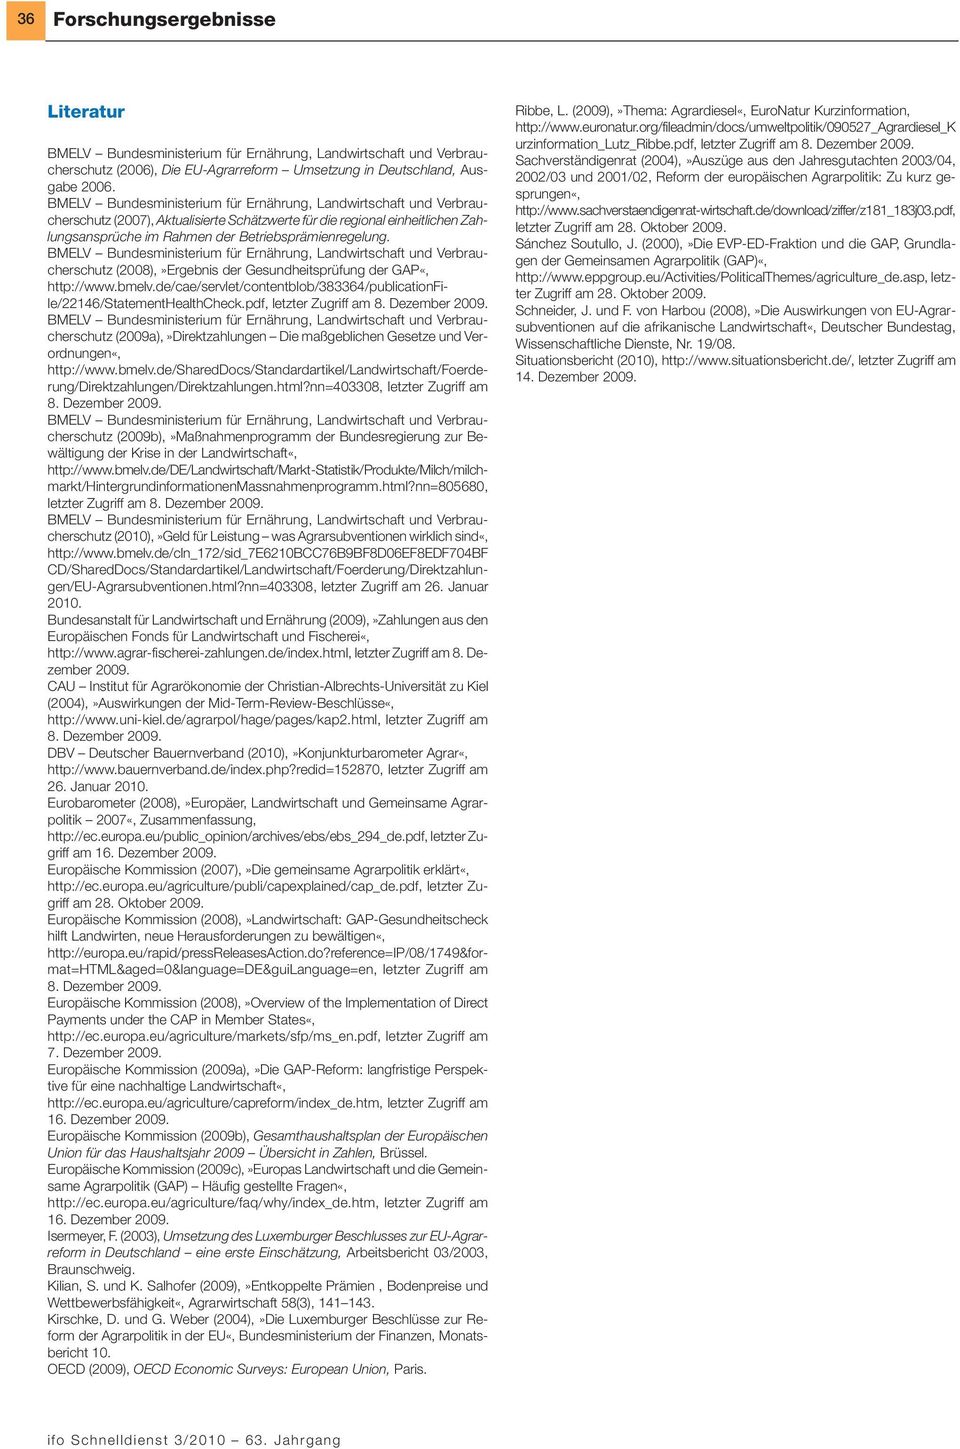 de/cae/servlet/contentblob/383364/publicationfile/22146/statementhealthcheck.pdf, letzter Zugriff am 8. Dezember 2009. (2009a),»Direktzahlungen Die maßgeblichen Gesetze und Verordnungen«, http://www.